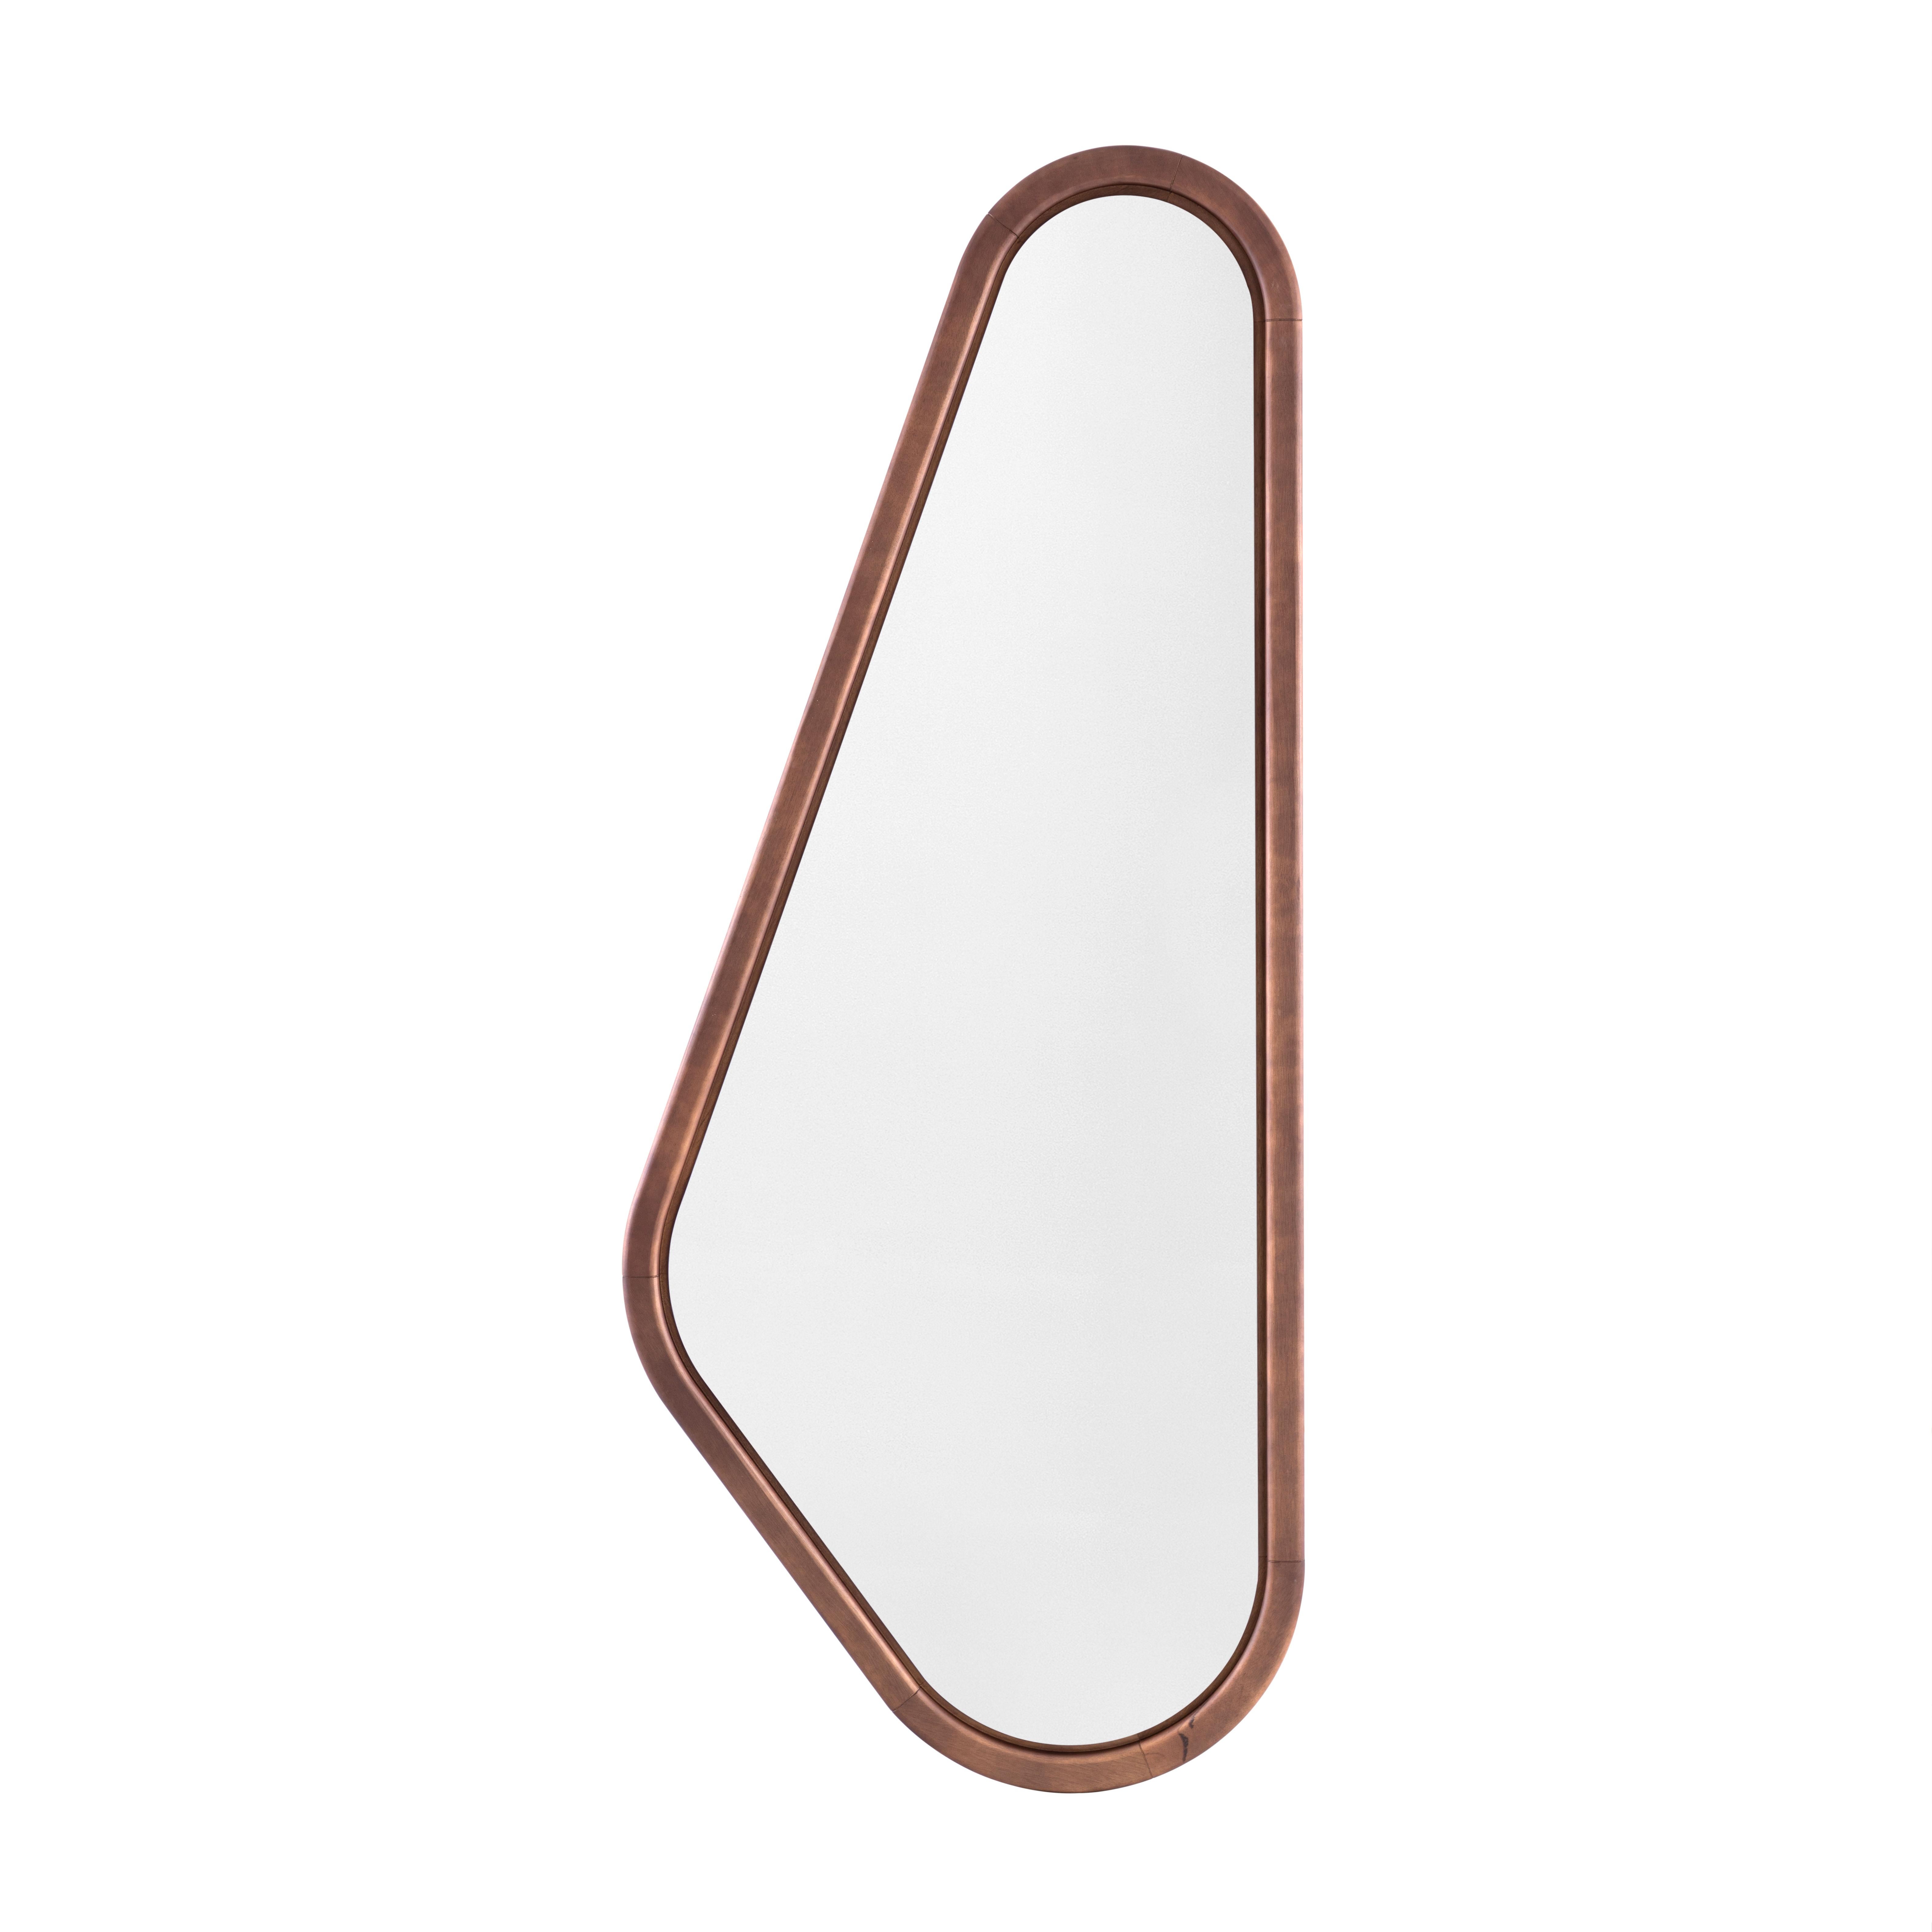 Avec un design léger et raffiné, le miroir Design/One incorpore une touche naturelle dans n'importe quelle zone de la maison. Ali, qui signifie 